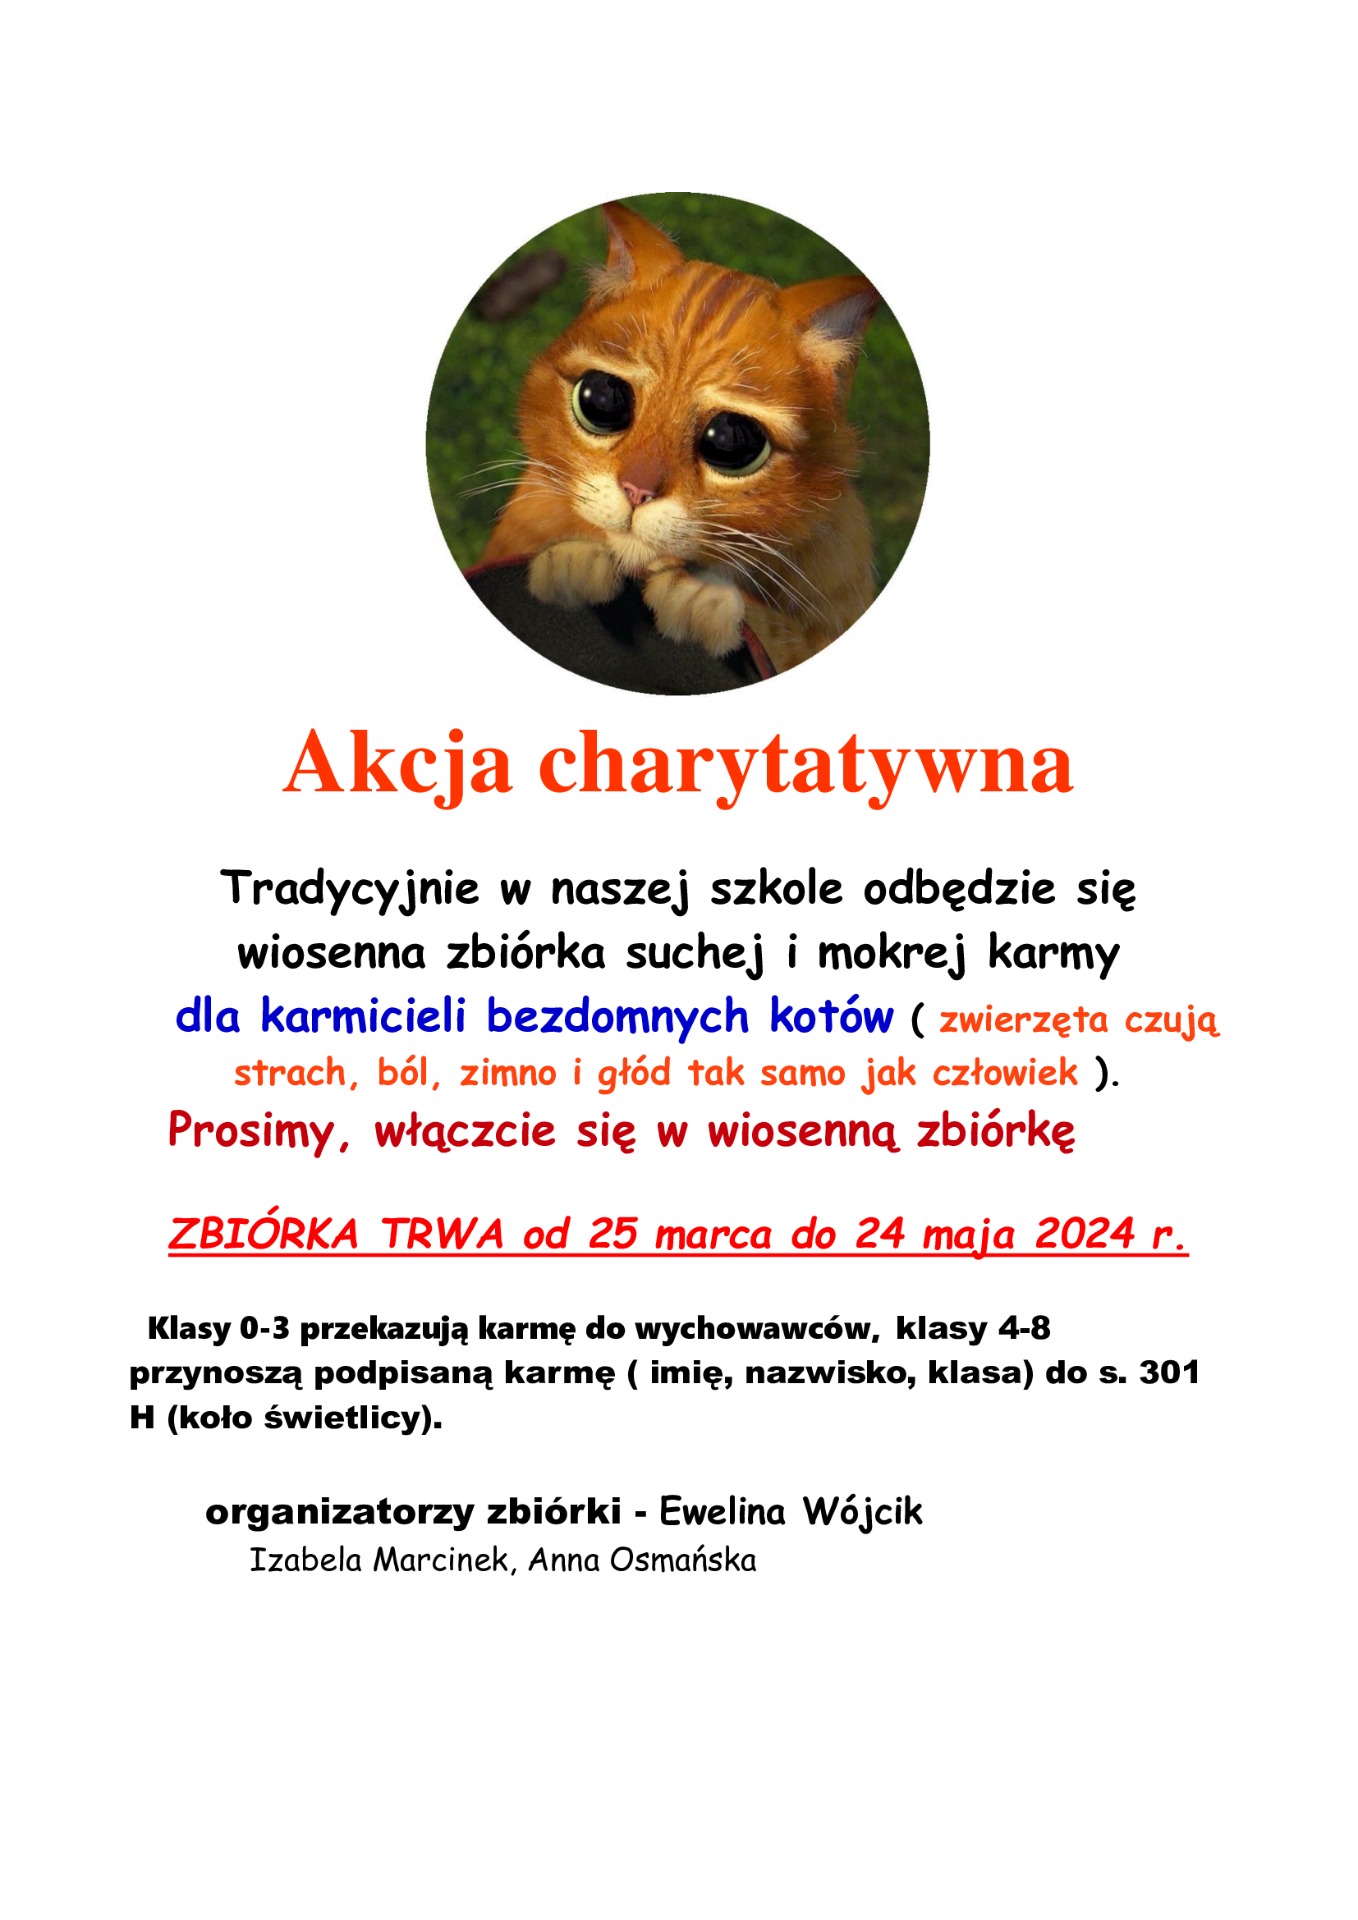 Akcja charytatywna - zbiórka karmy dla kotów - Obrazek 1